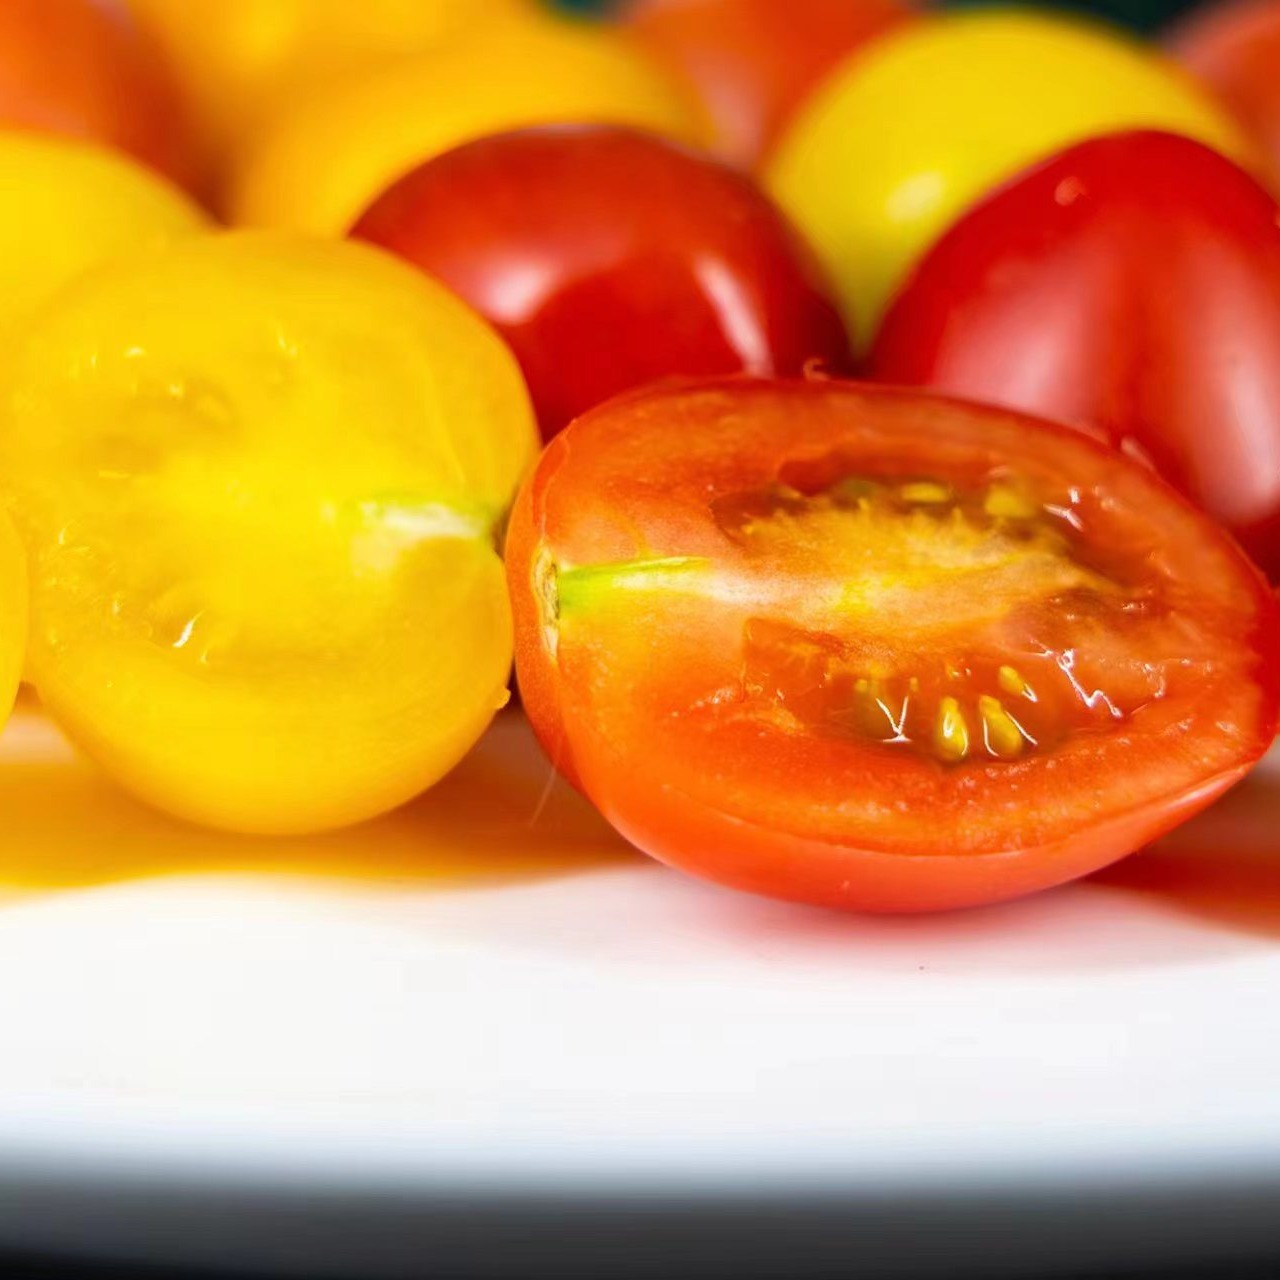 自产小西红柿混搭随机 | 营养丰富 多口味 酸甜多汁 | 农场自产*Cherry Tomatoes